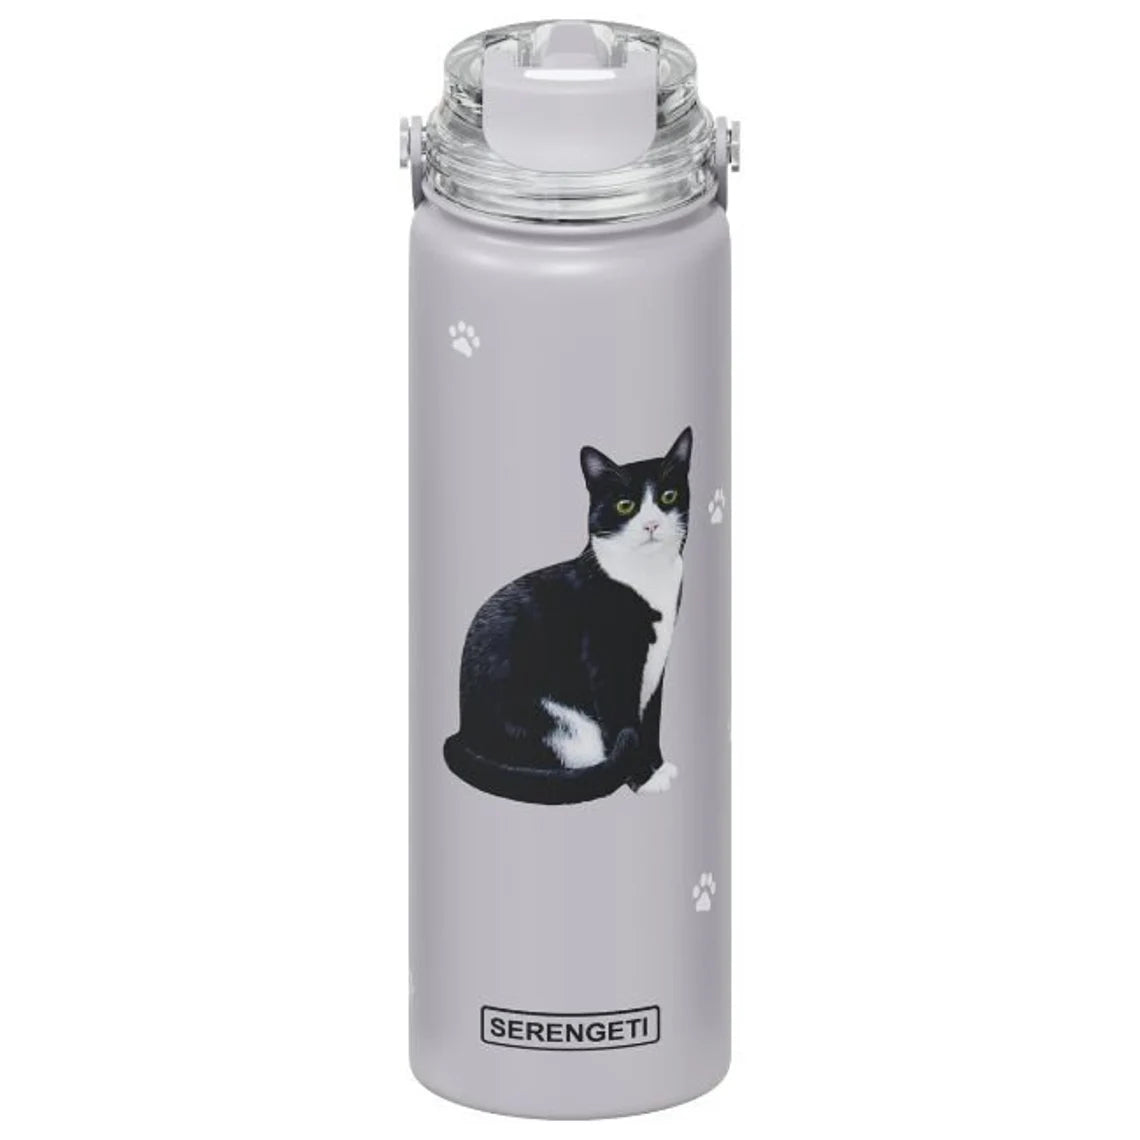 SERENGETI Stainless Steel Water Bottle 24oz - Black &amp; White Cat